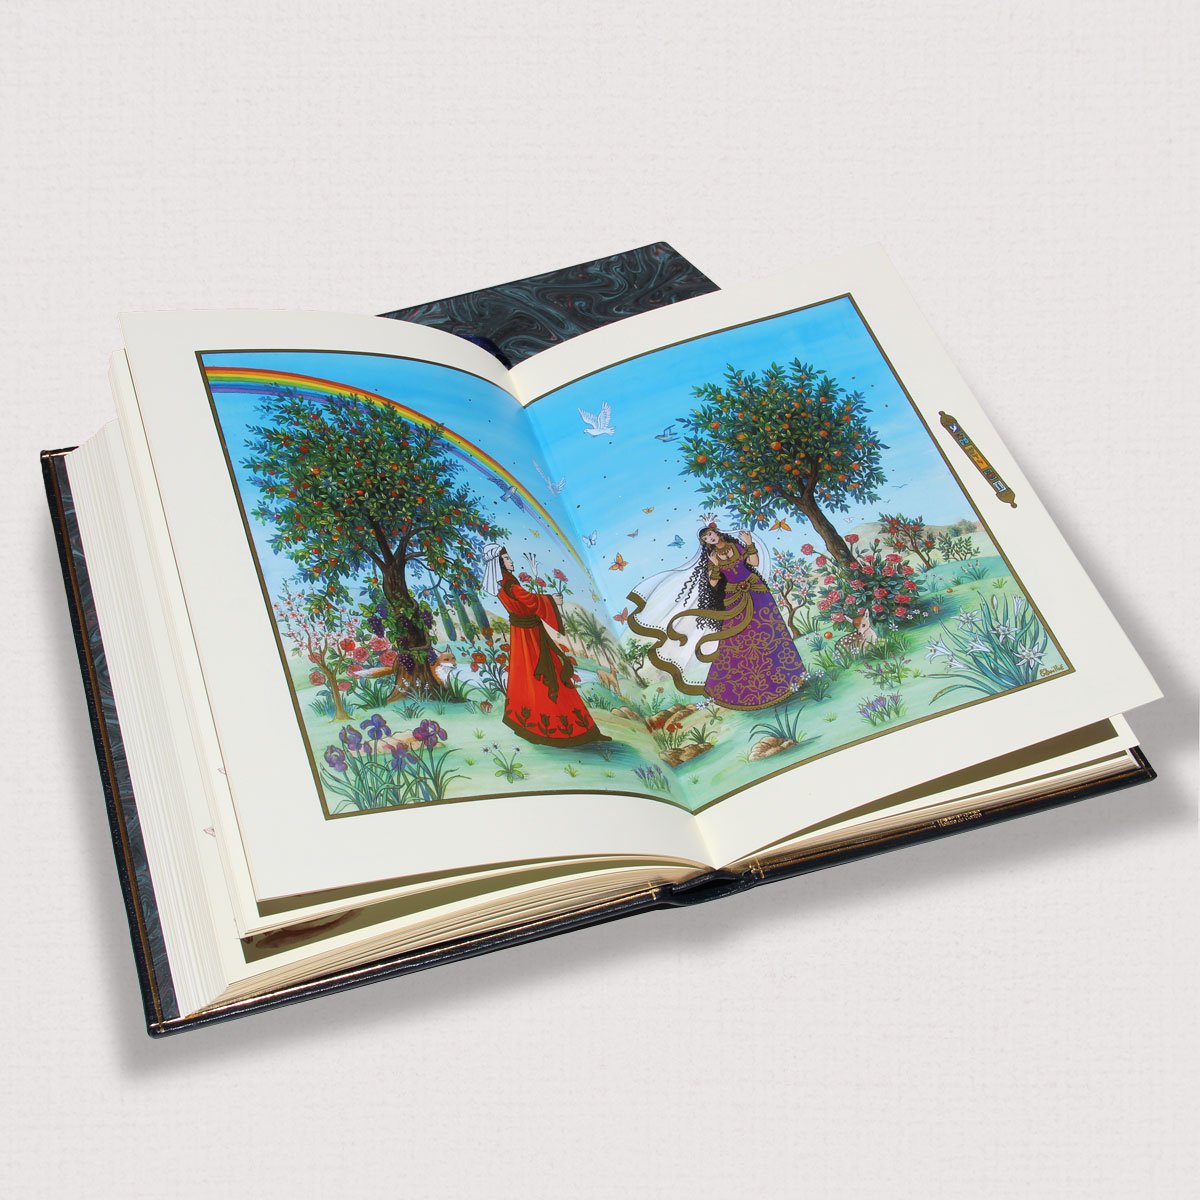 Livre Le Cantique des Cantiques aperçu de la double page illustrée intérieure exemplaire luxe Editions Larroque